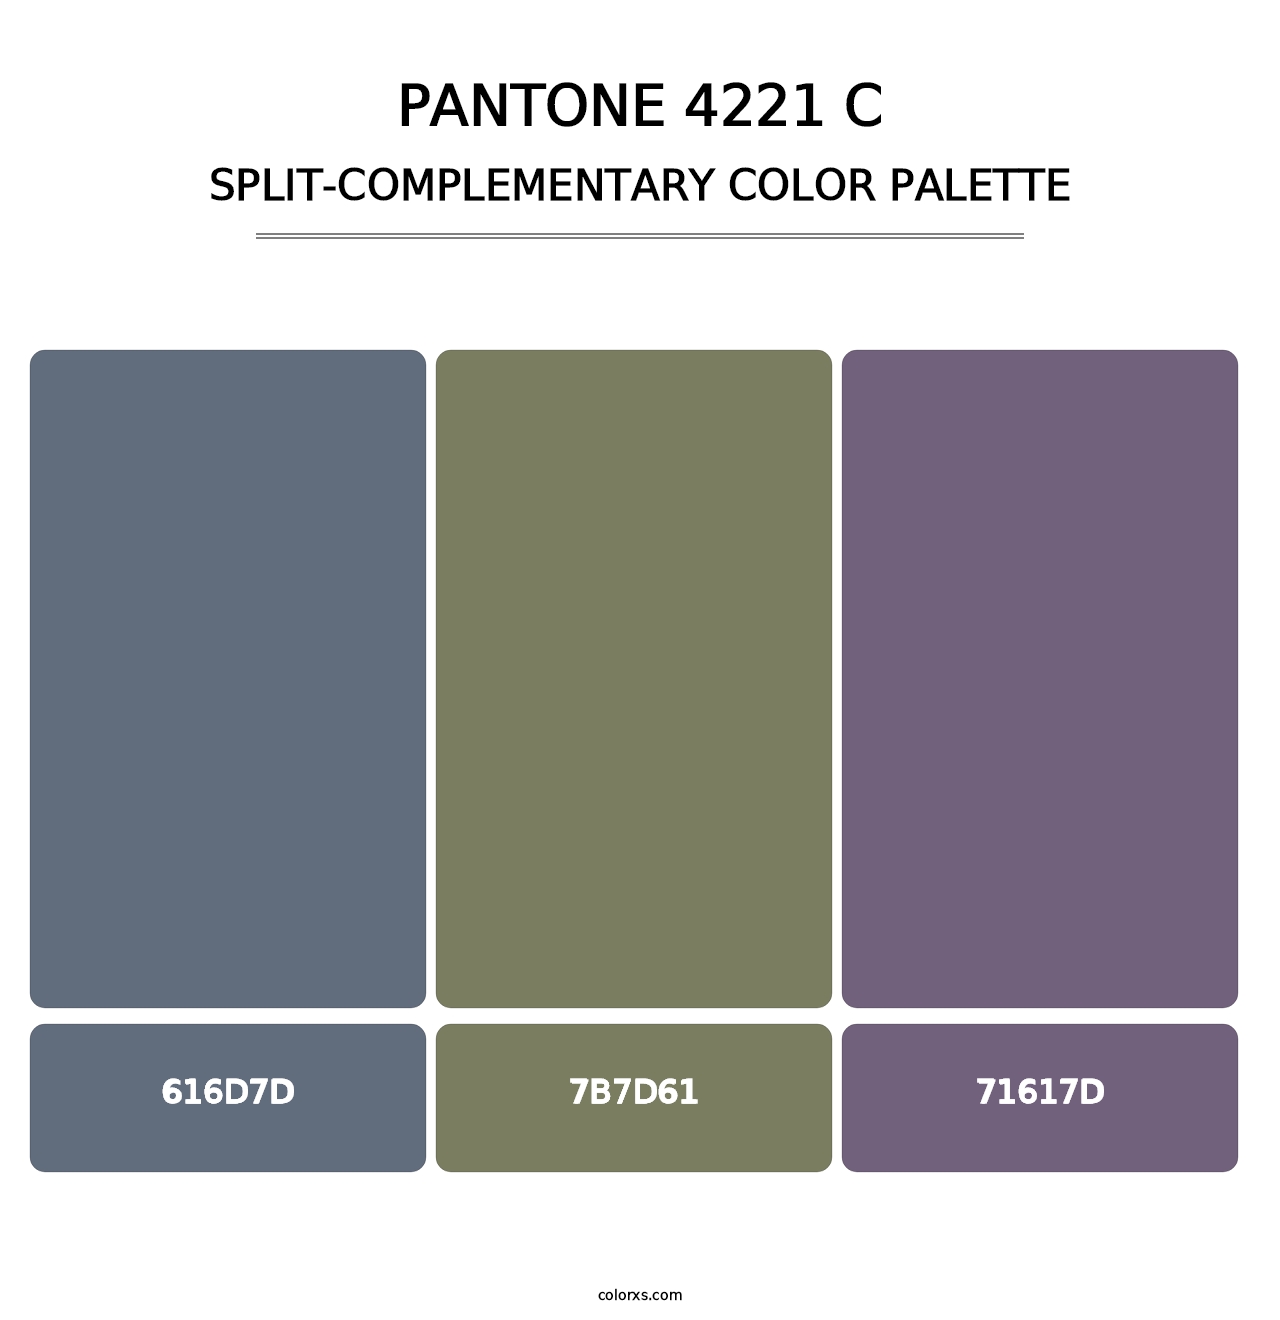 PANTONE 4221 C - Split-Complementary Color Palette